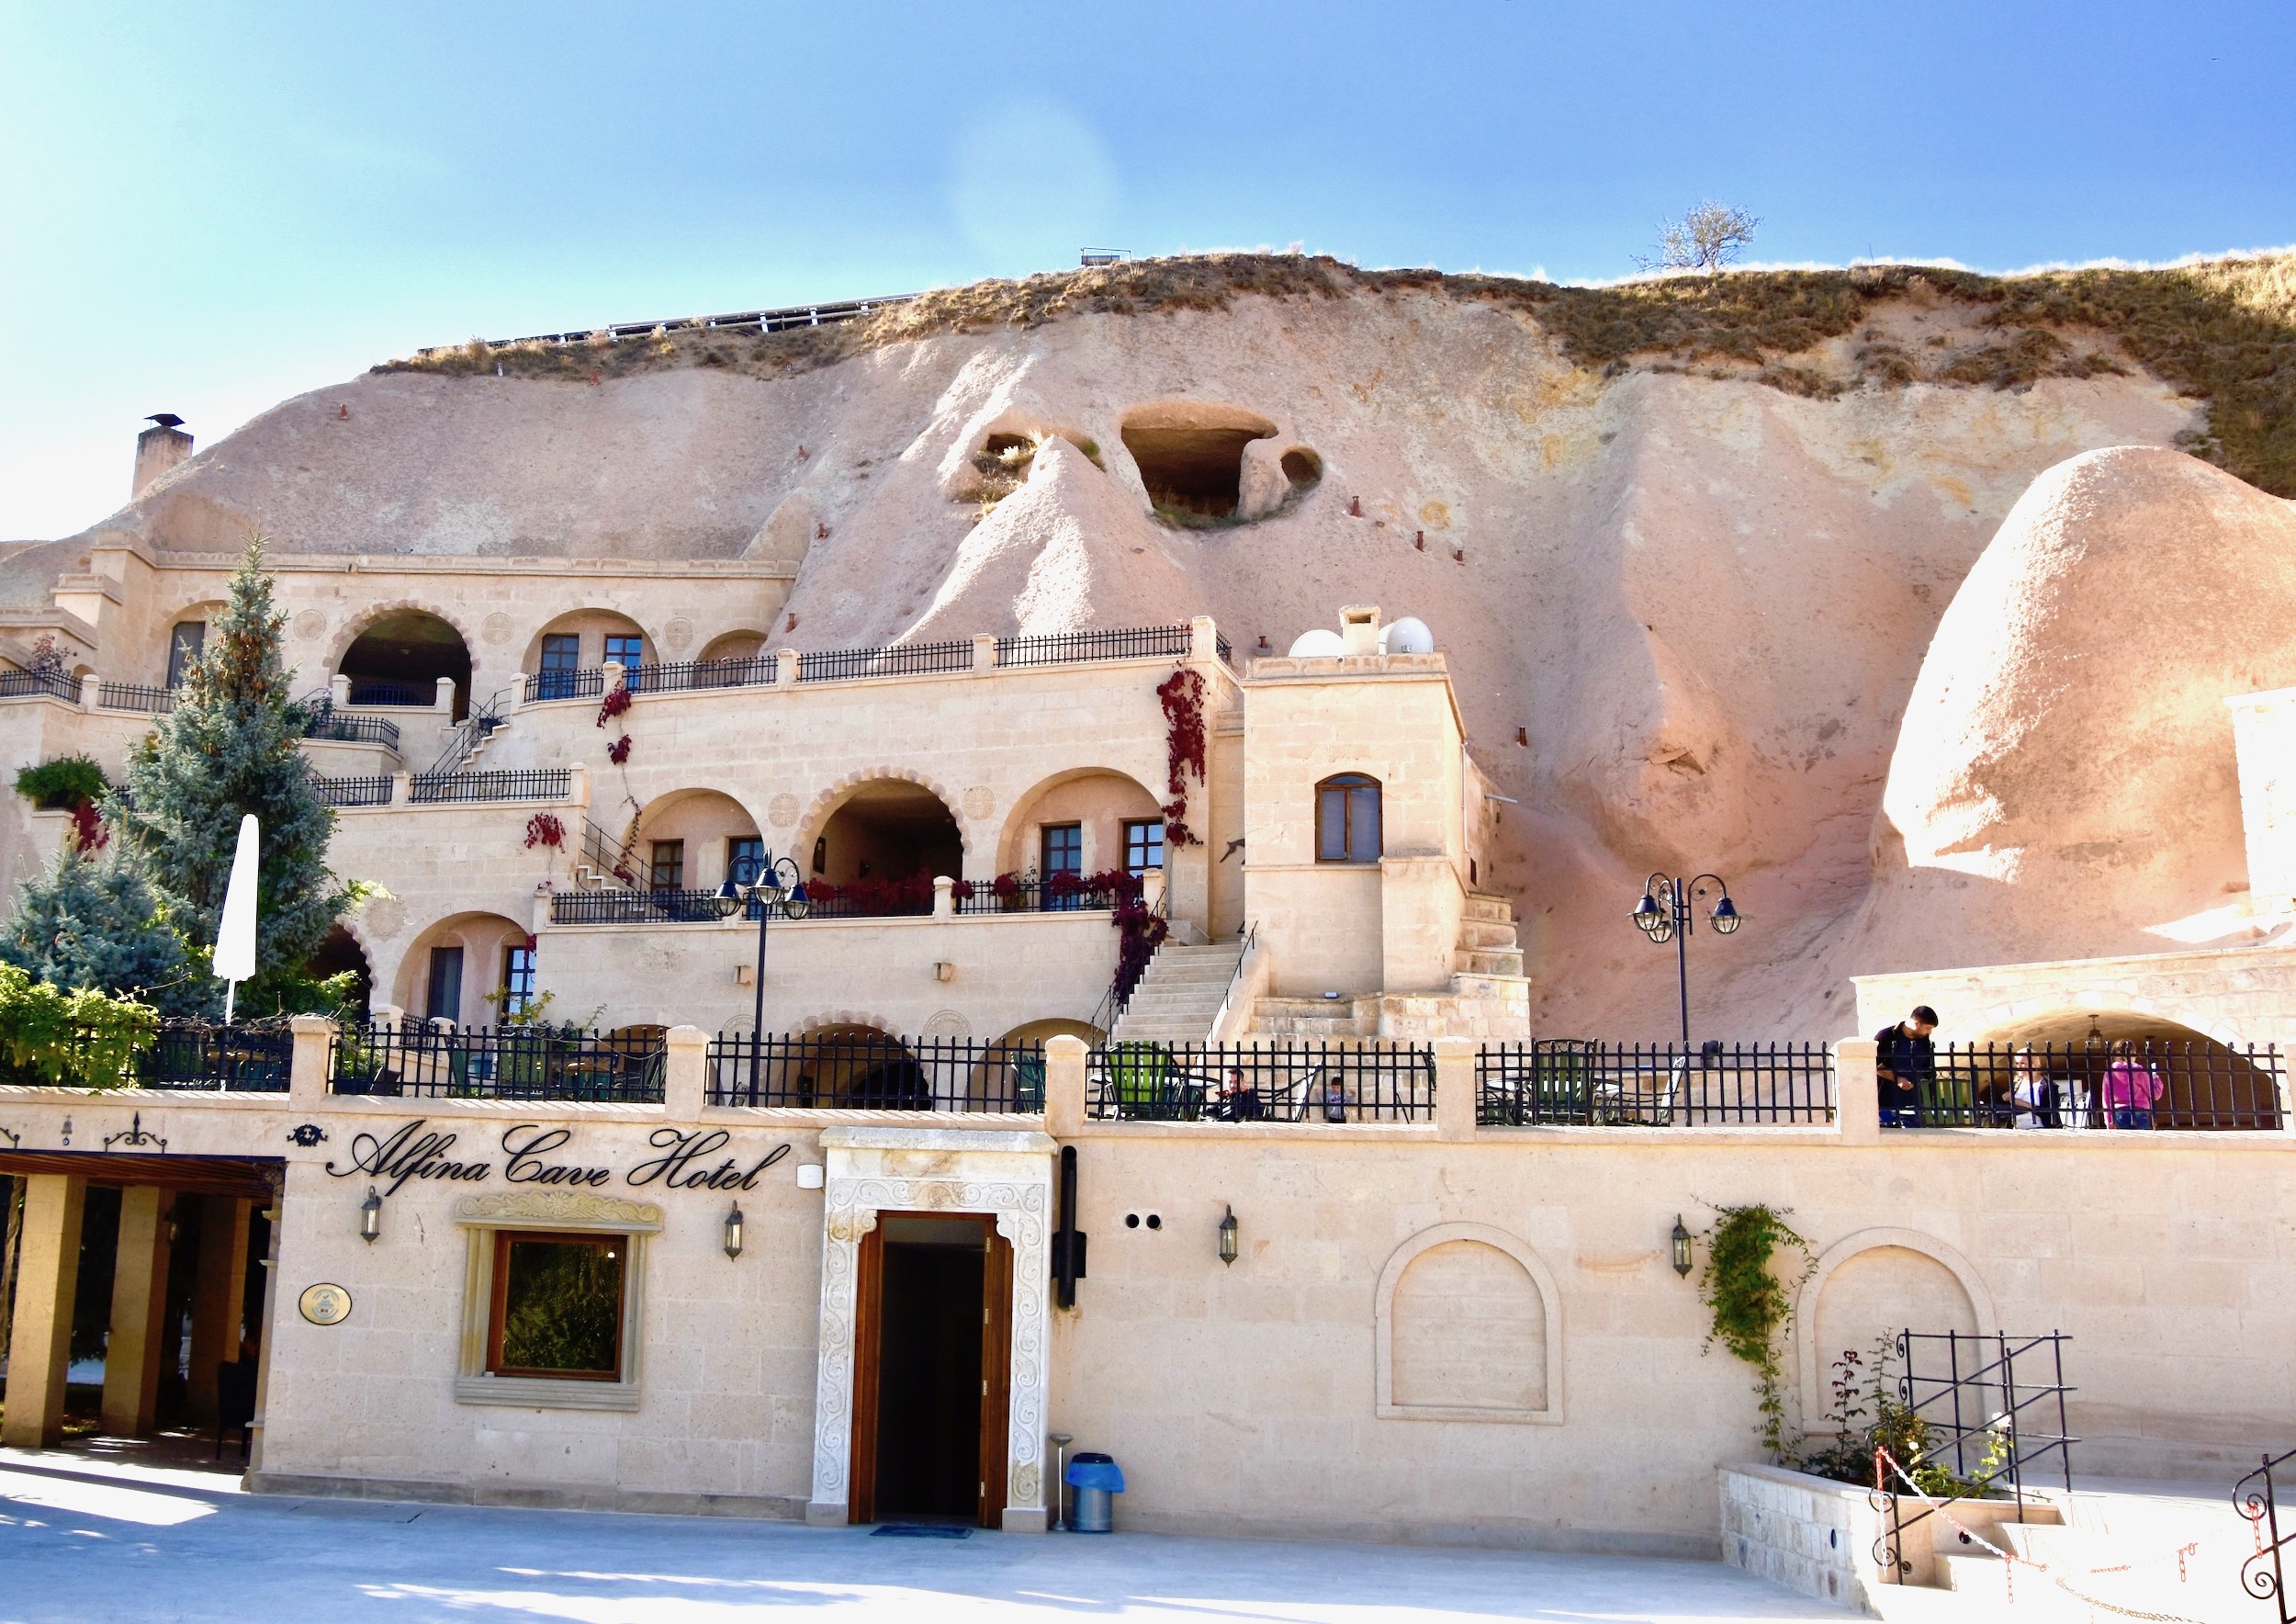 Alfina Cave Hotel, Urgup, Cappadocia